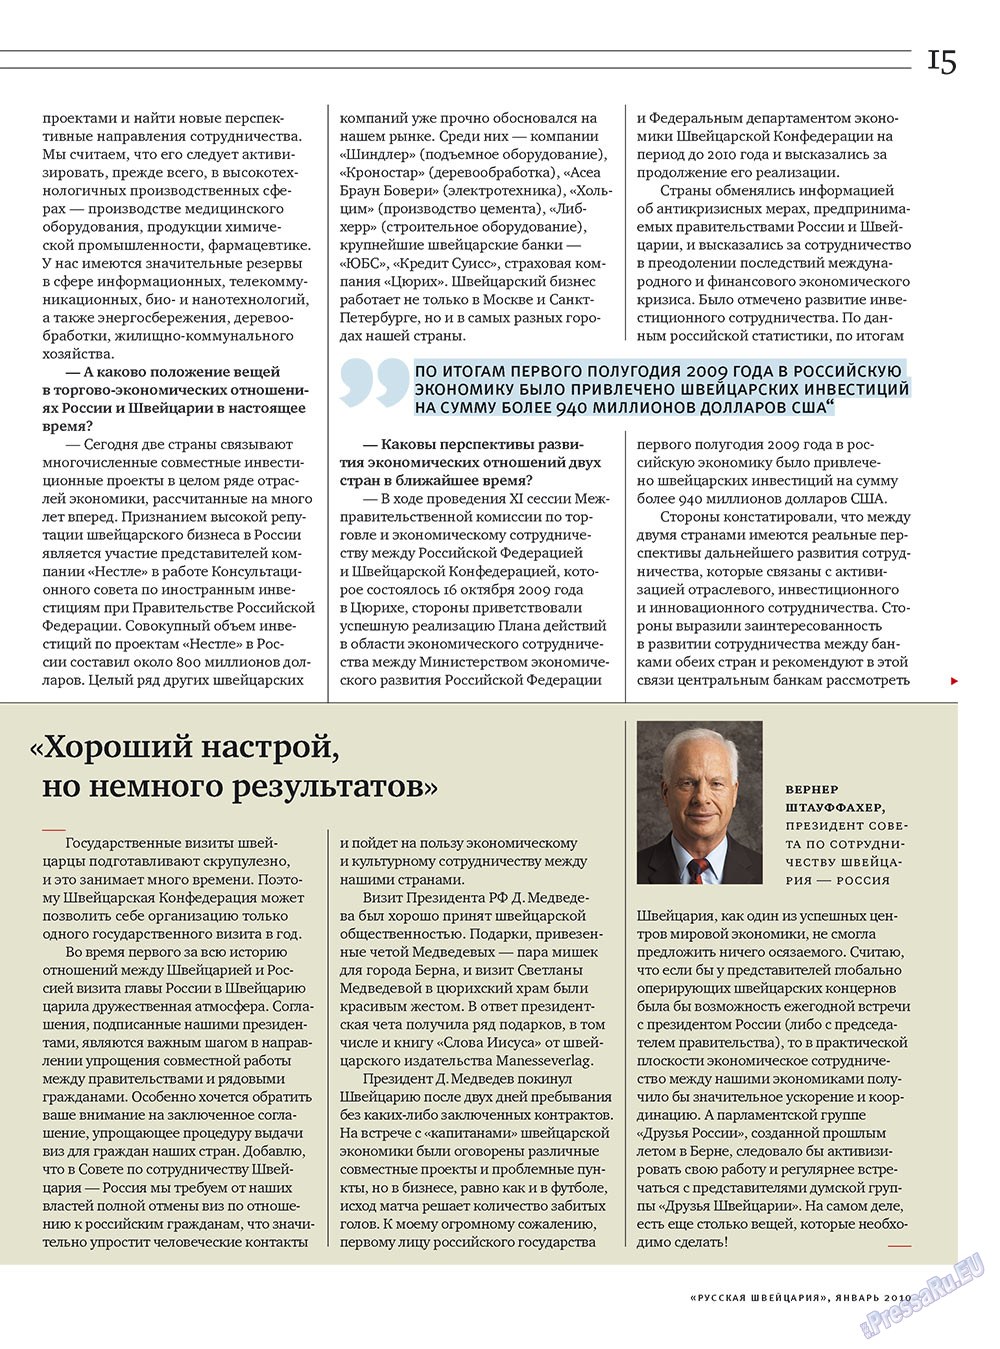 Русская Швейцария, журнал. 2010 №1 стр.15